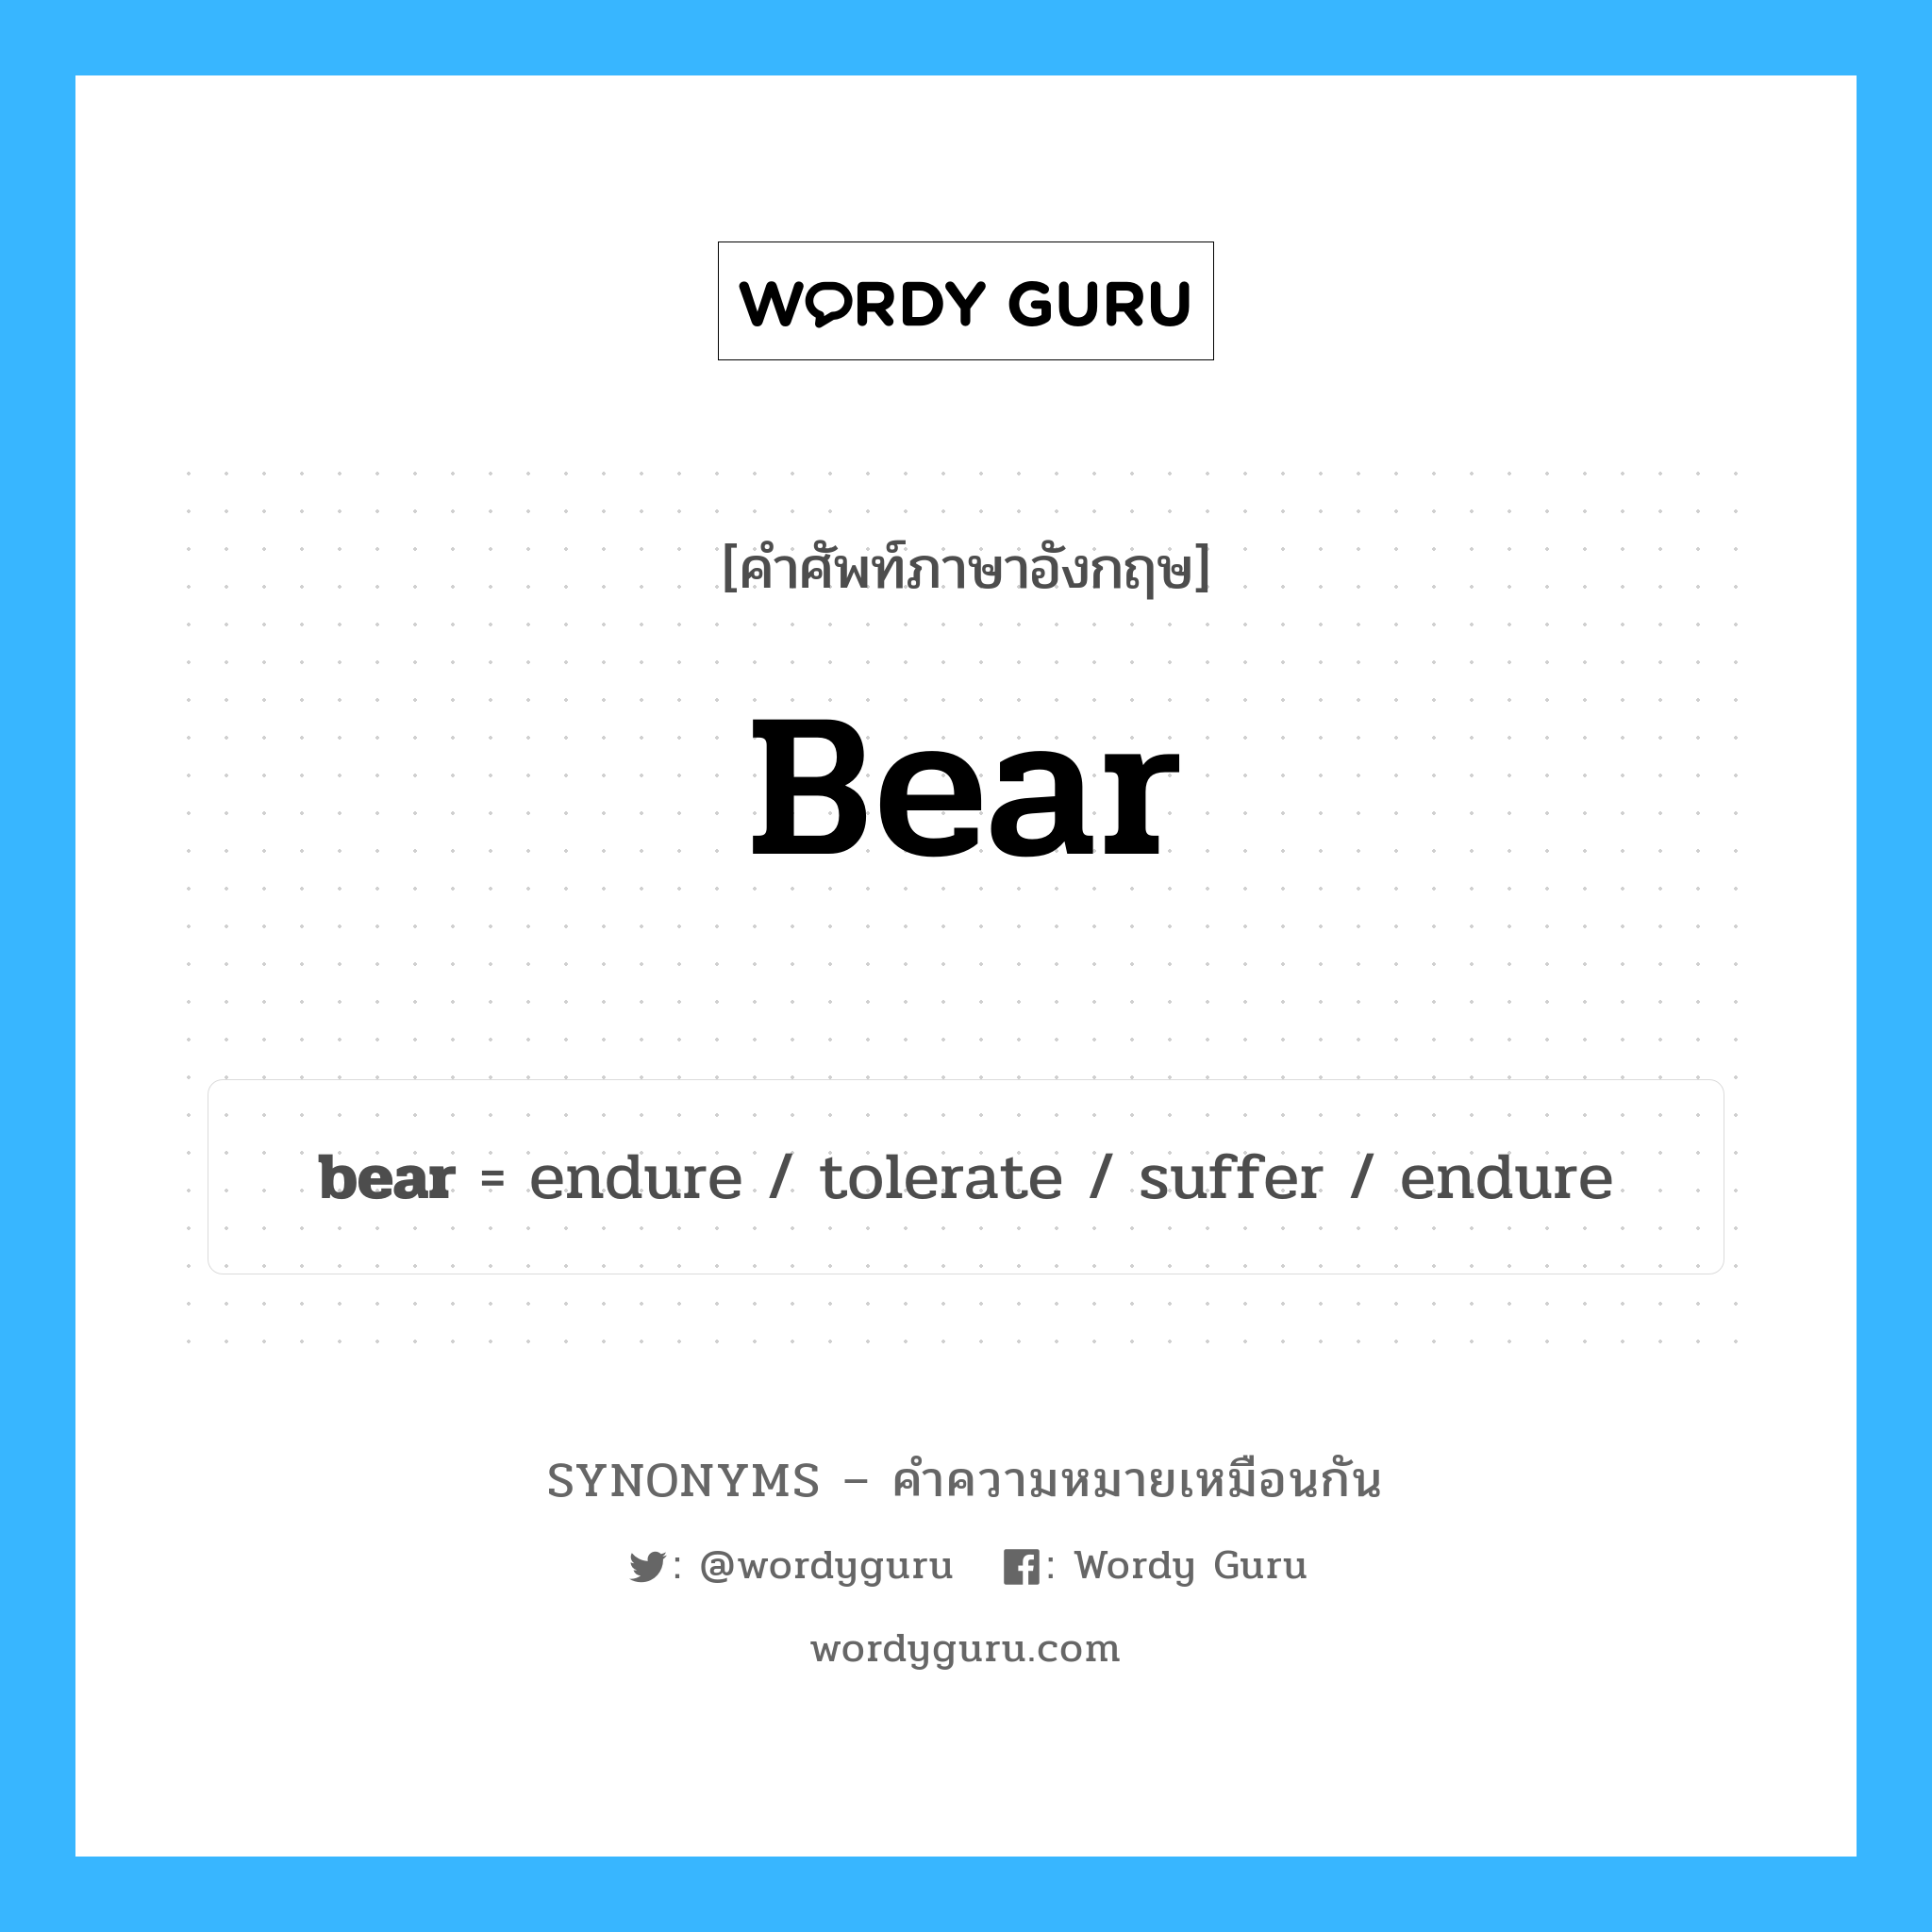 tolerate เป็นหนึ่งใน bear และมีคำอื่น ๆ อีกดังนี้, คำศัพท์ภาษาอังกฤษ tolerate ความหมายคล้ายกันกับ bear แปลว่า ทนต่อ หมวด bear